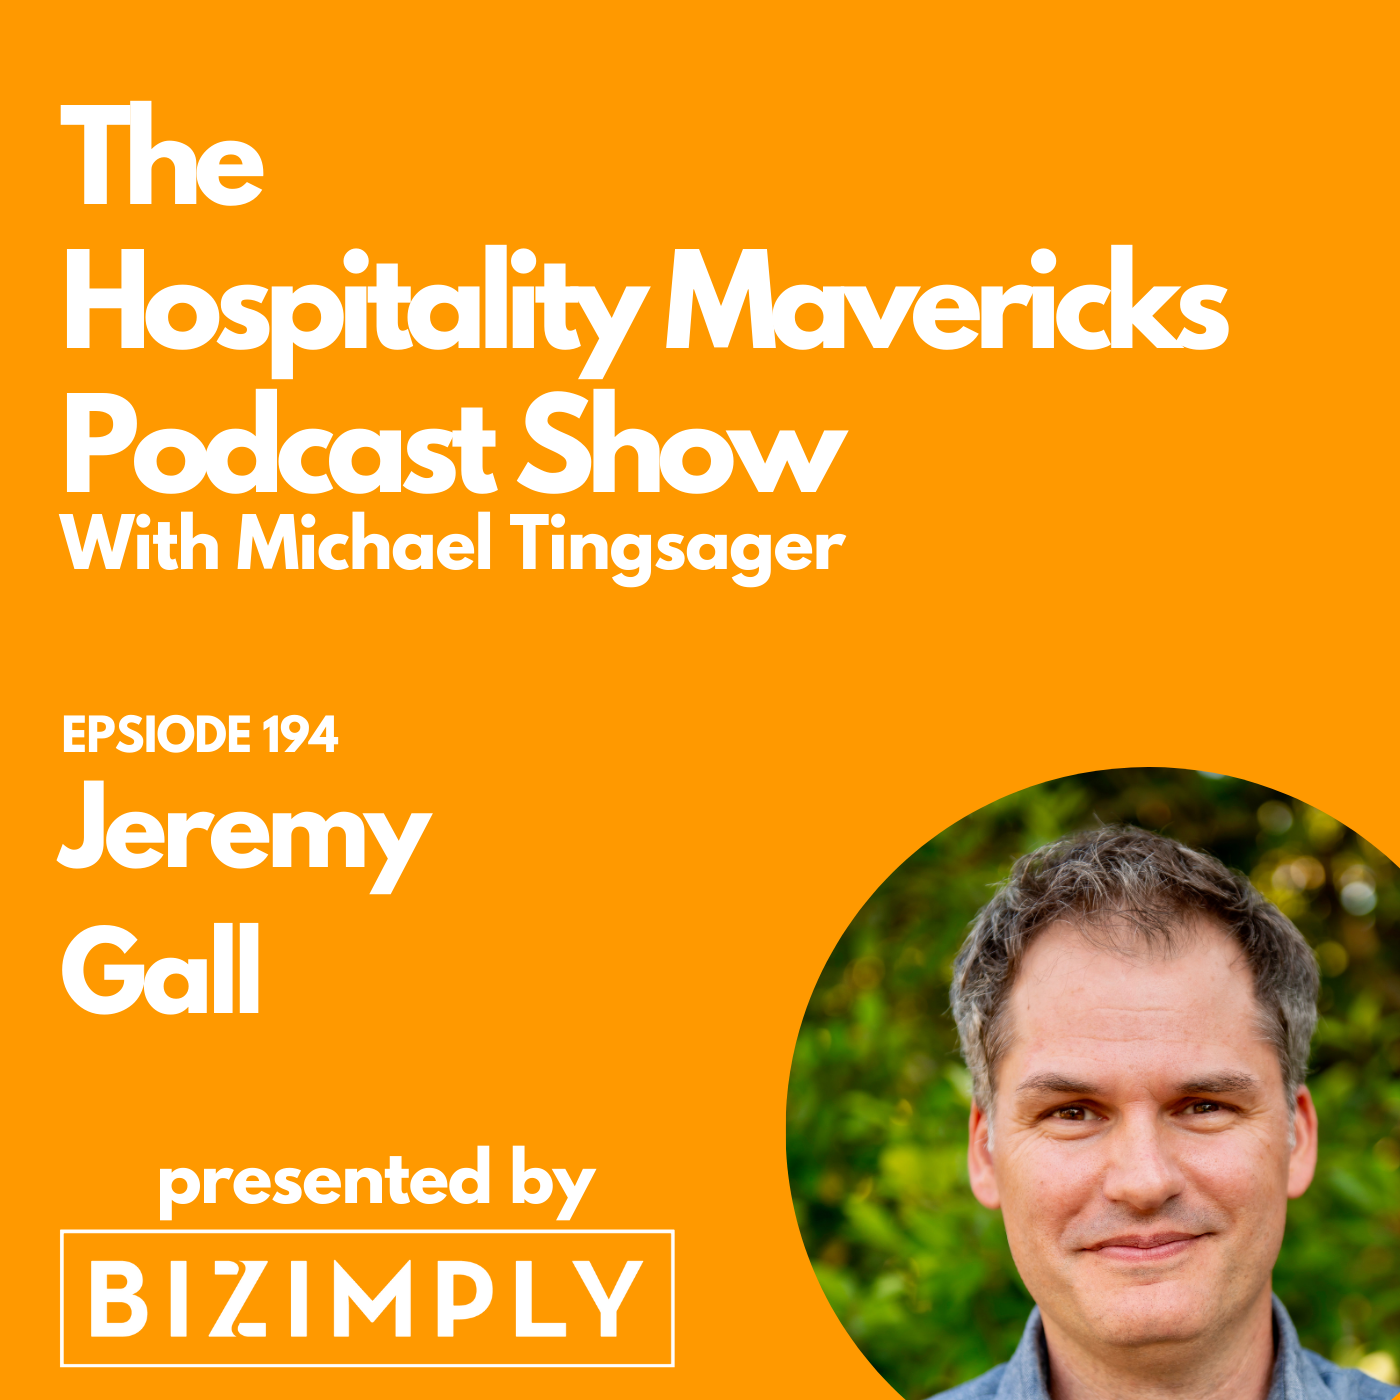 Artwork for podcast Hospitality Mavericks Podcast Show